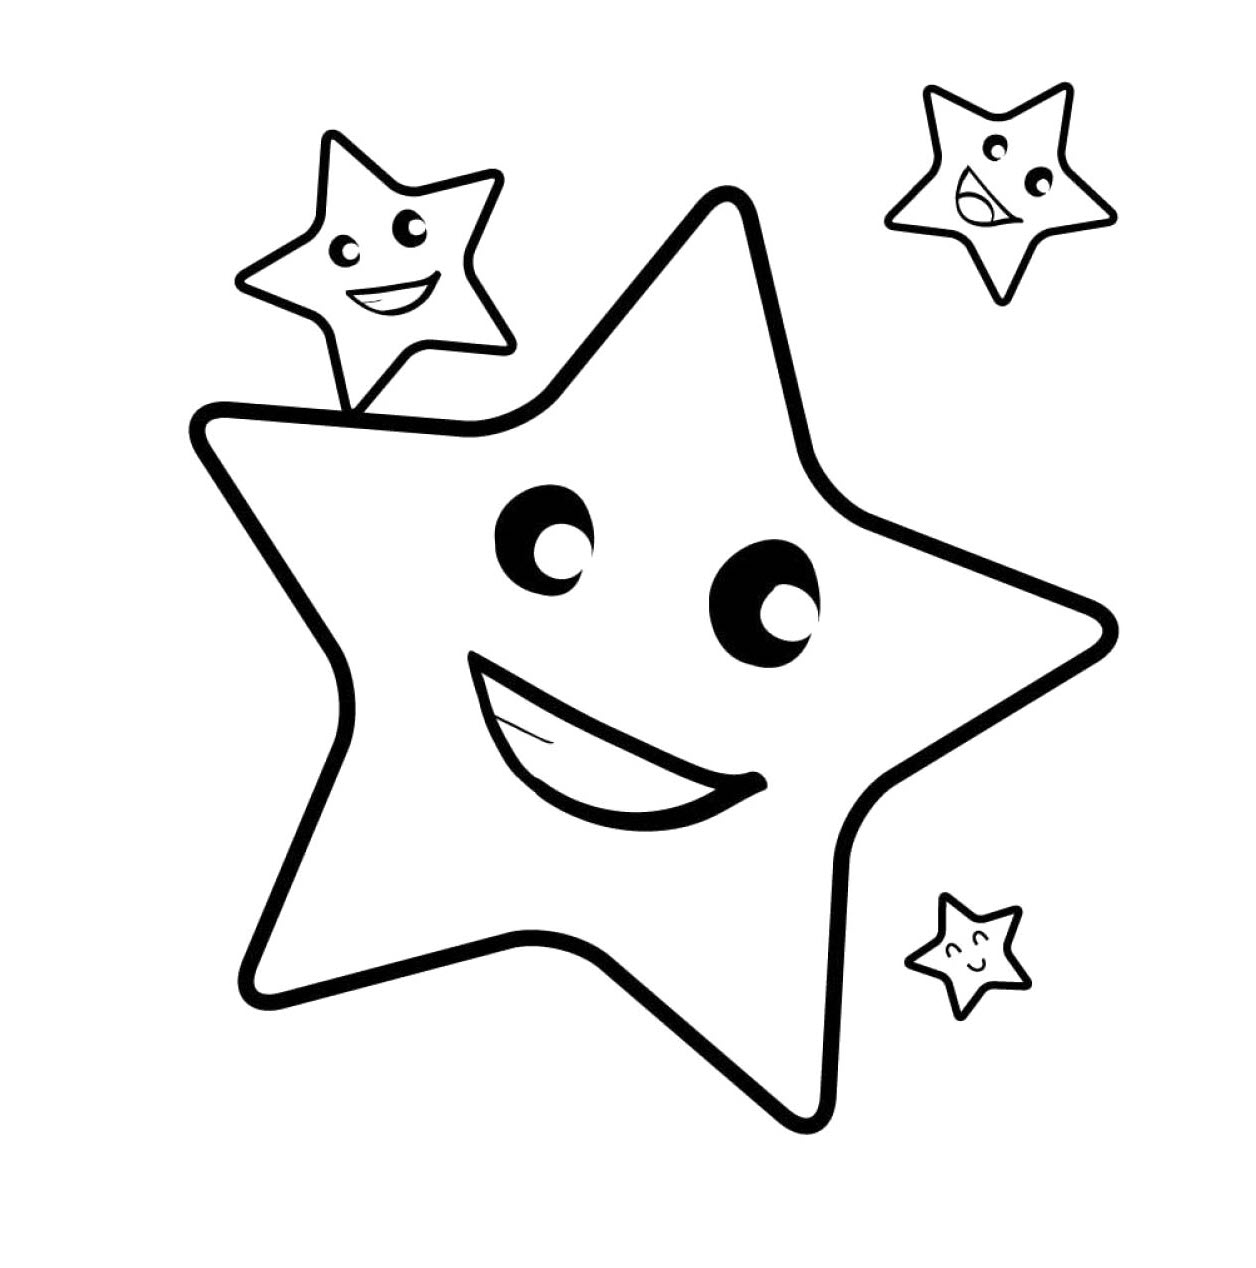 Tổng hợp các bức tranh tô màu ngôi sao đẹp cho bé - [Kích thước hình ảnh: 1256x1268 px]